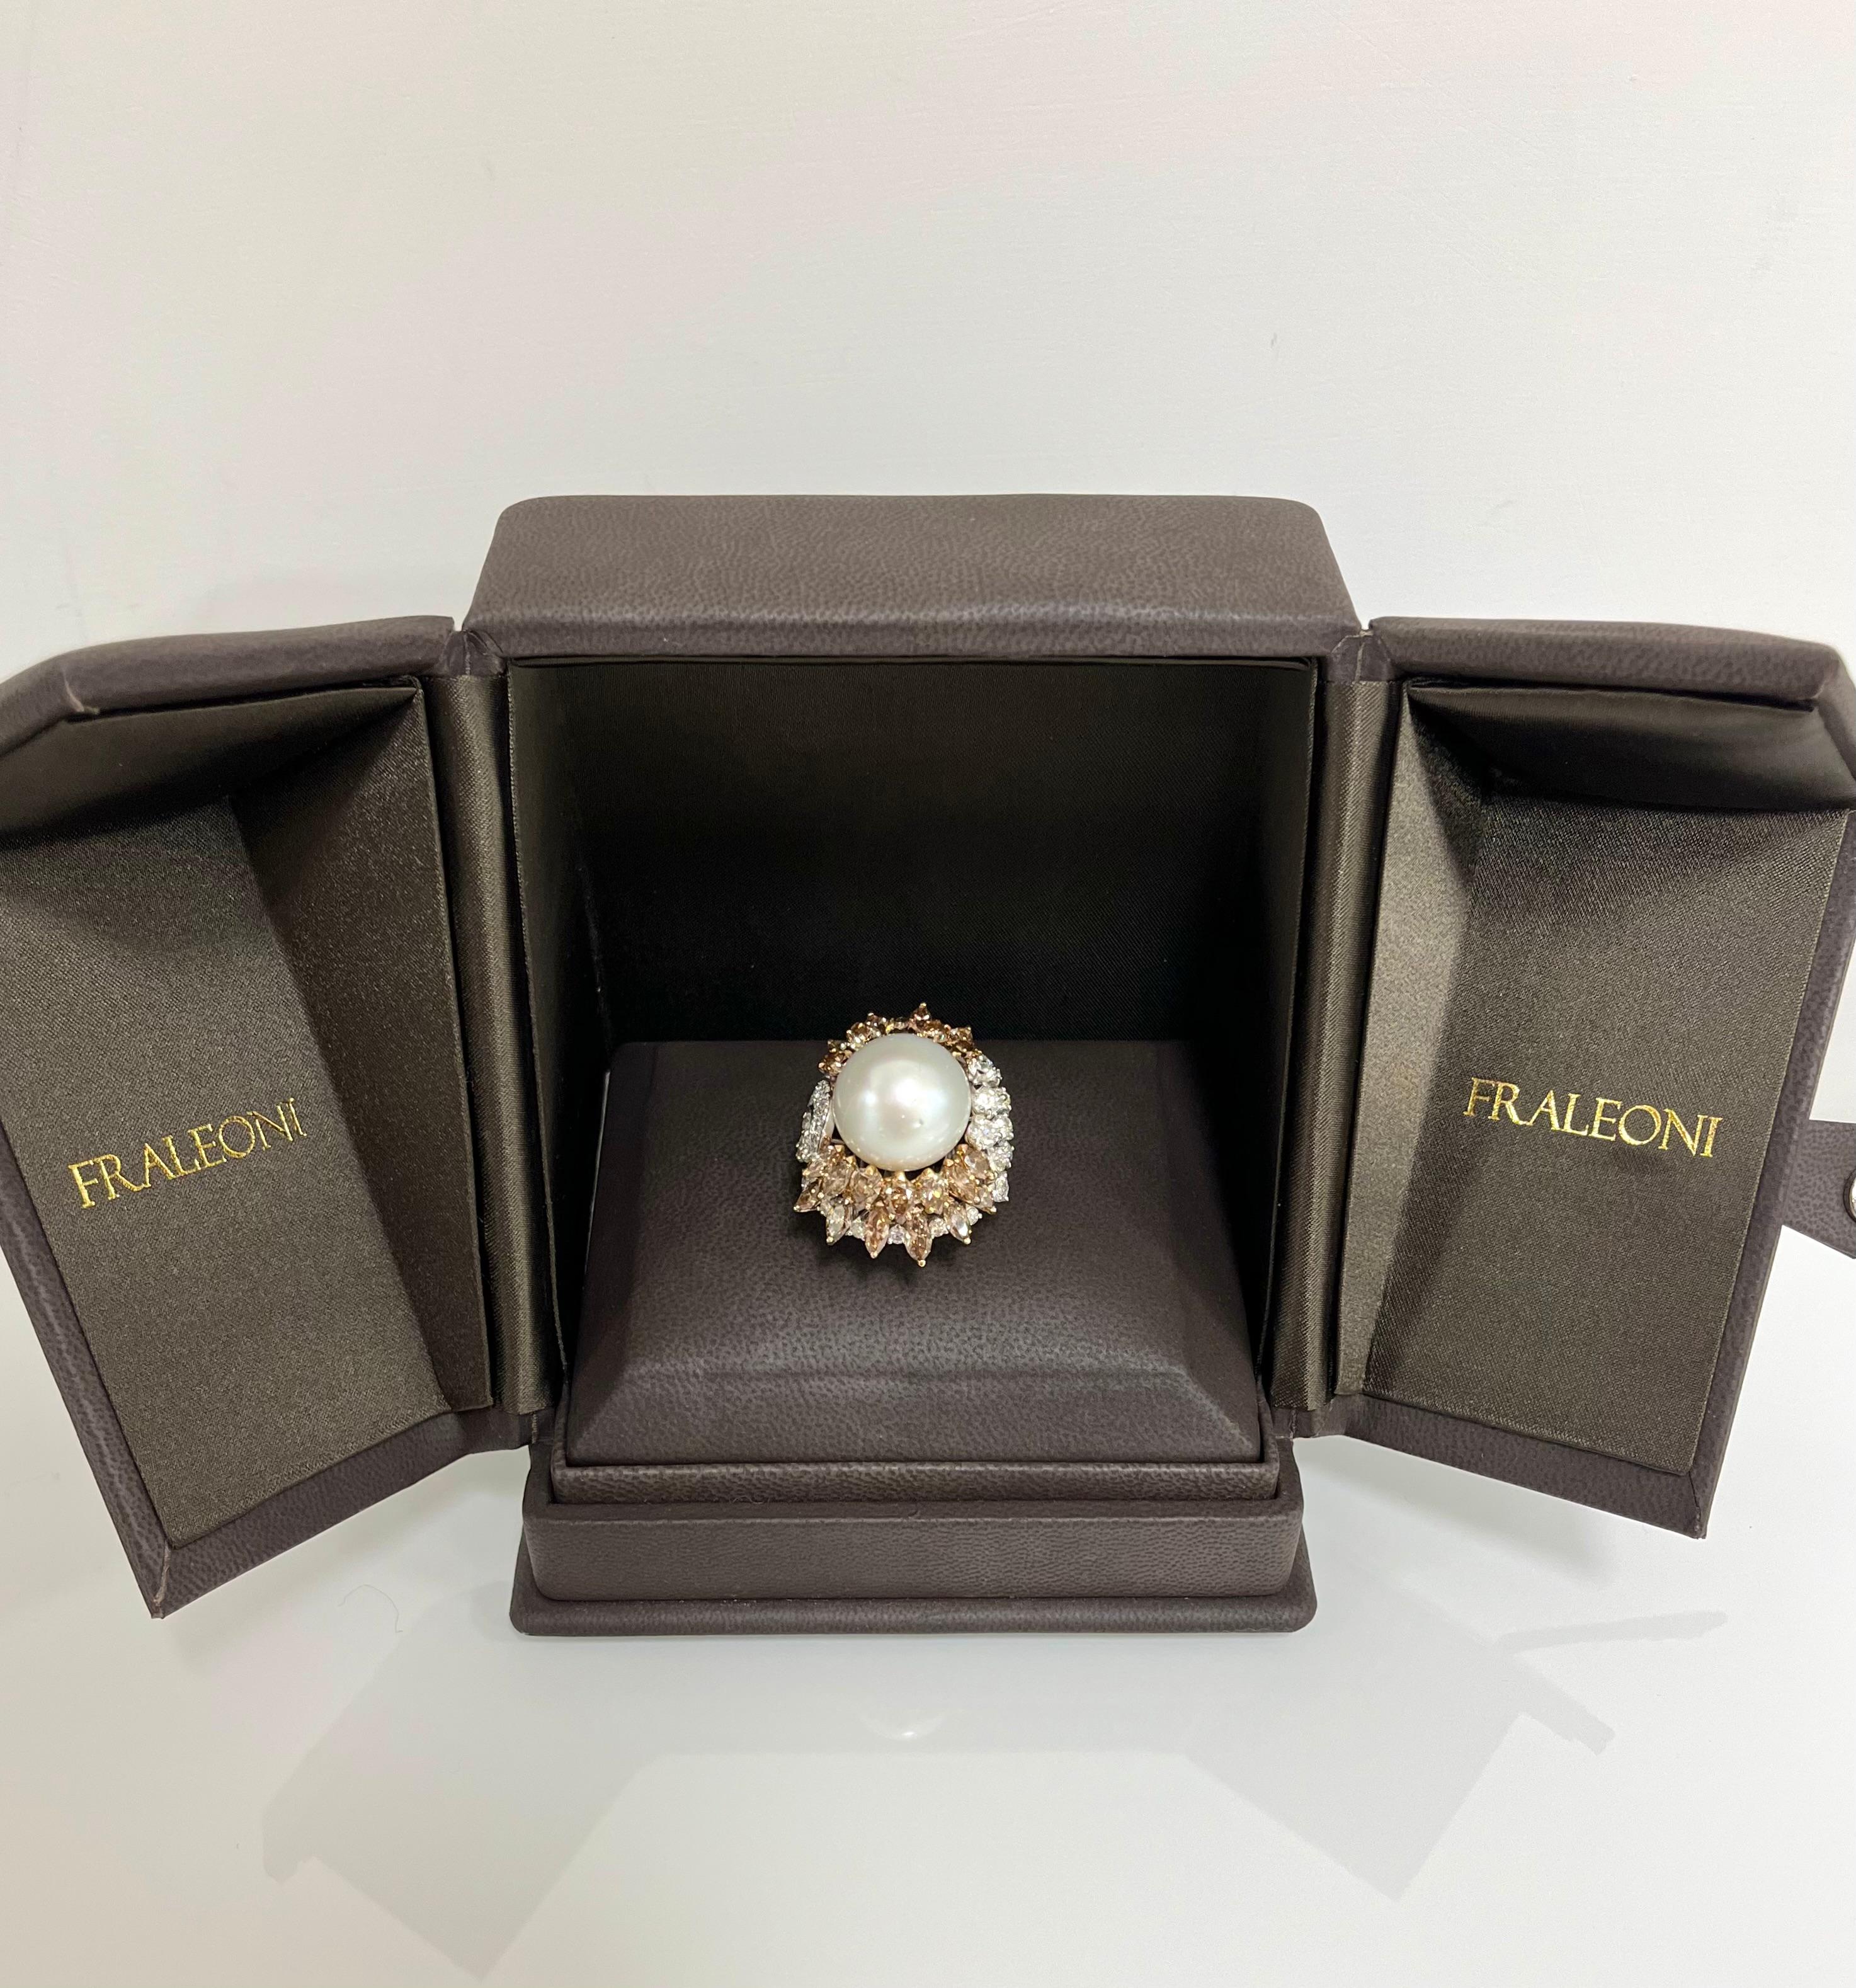 Fraleoni 18 Kt. White Gold Diamond Australian Pearl Cocktail Ring For Sale 1